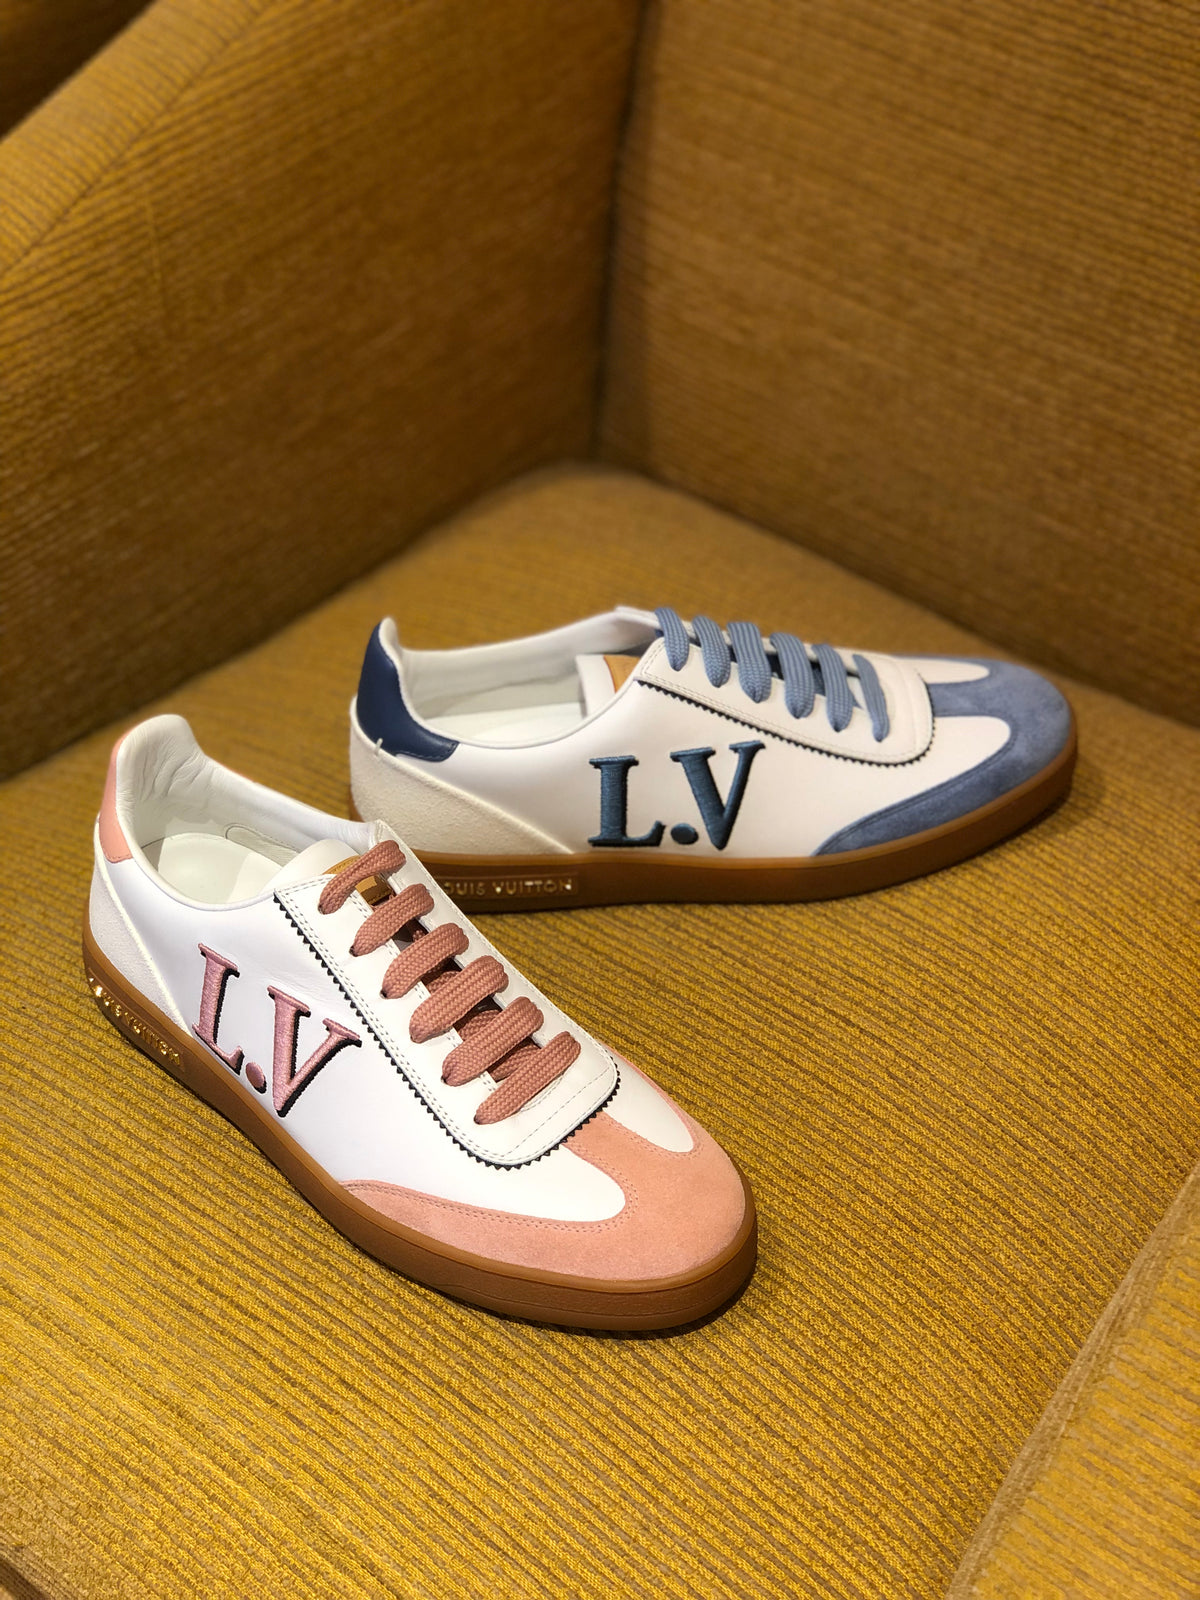 Louis Vuitton Shoes 2019 – hey it&#39;s personal shopper london